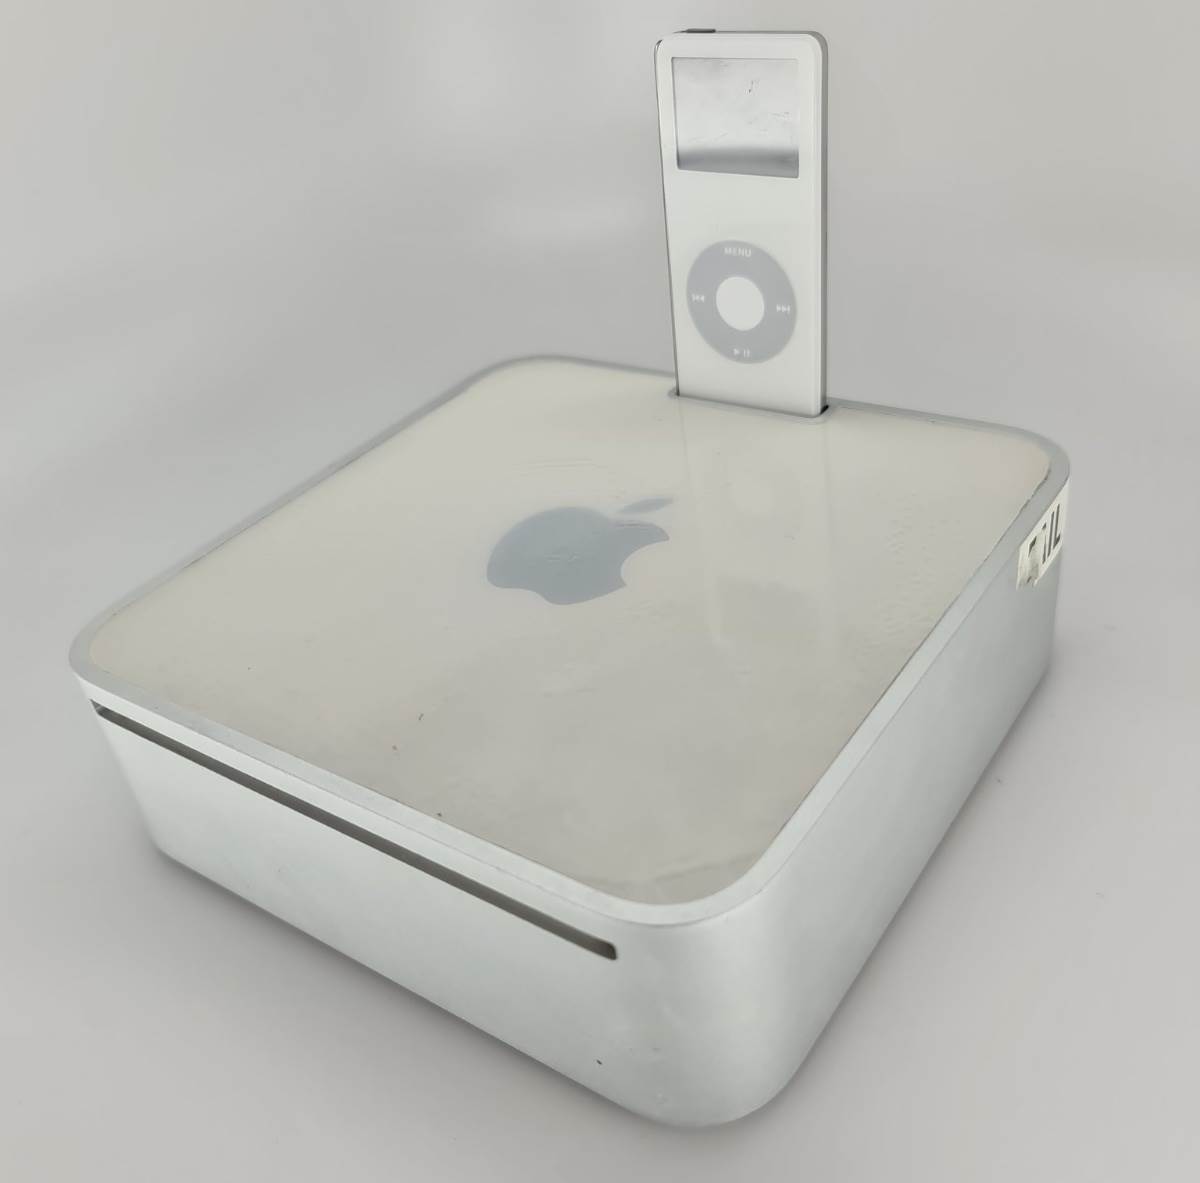 W sieci pojawiły się zdjęcia rzadkiego prototypu Maca mini ze stacją dokującą do iPoda polecane, ciekawostki prototyp, Mac mini  Użytkownik Twittera o pseudonimie @DongleBookPro zamiesił w sieci zdjęcia rzadkiego prototypu Maca mini pierwszej generacji z wbudowaną stacją dokującą do iPoda nano. mini1